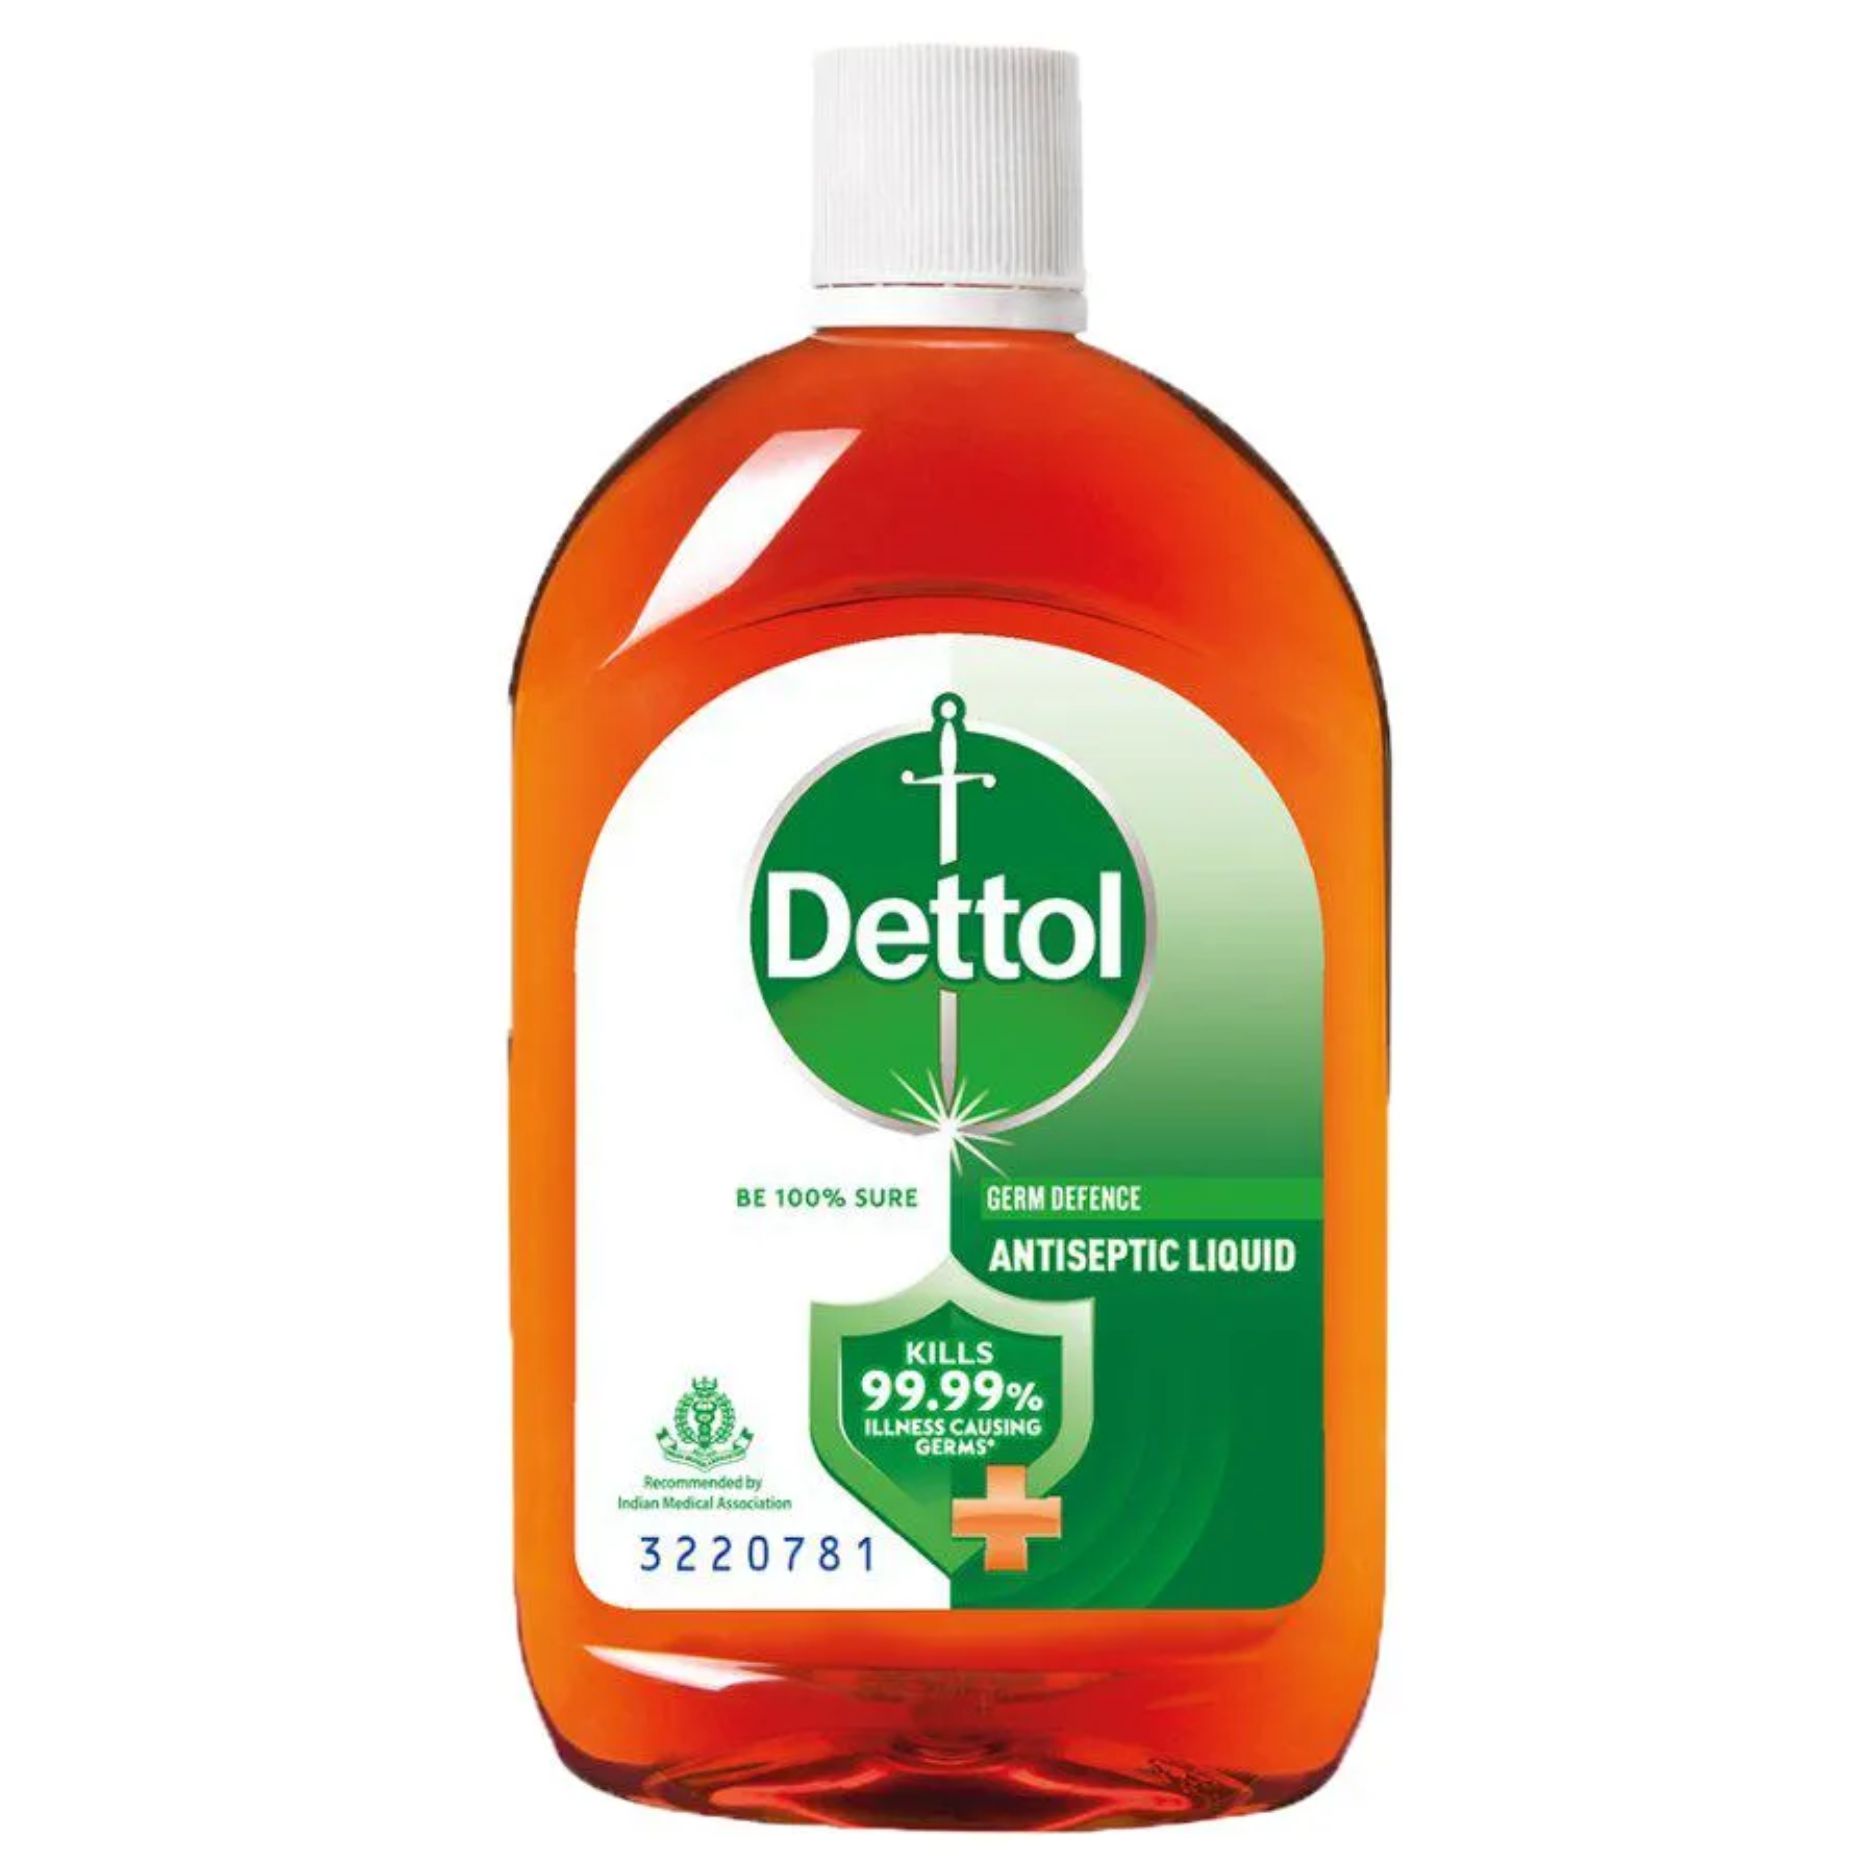 Dettol Antiseptic Disinfectant Liquid, 125 ml Bottle